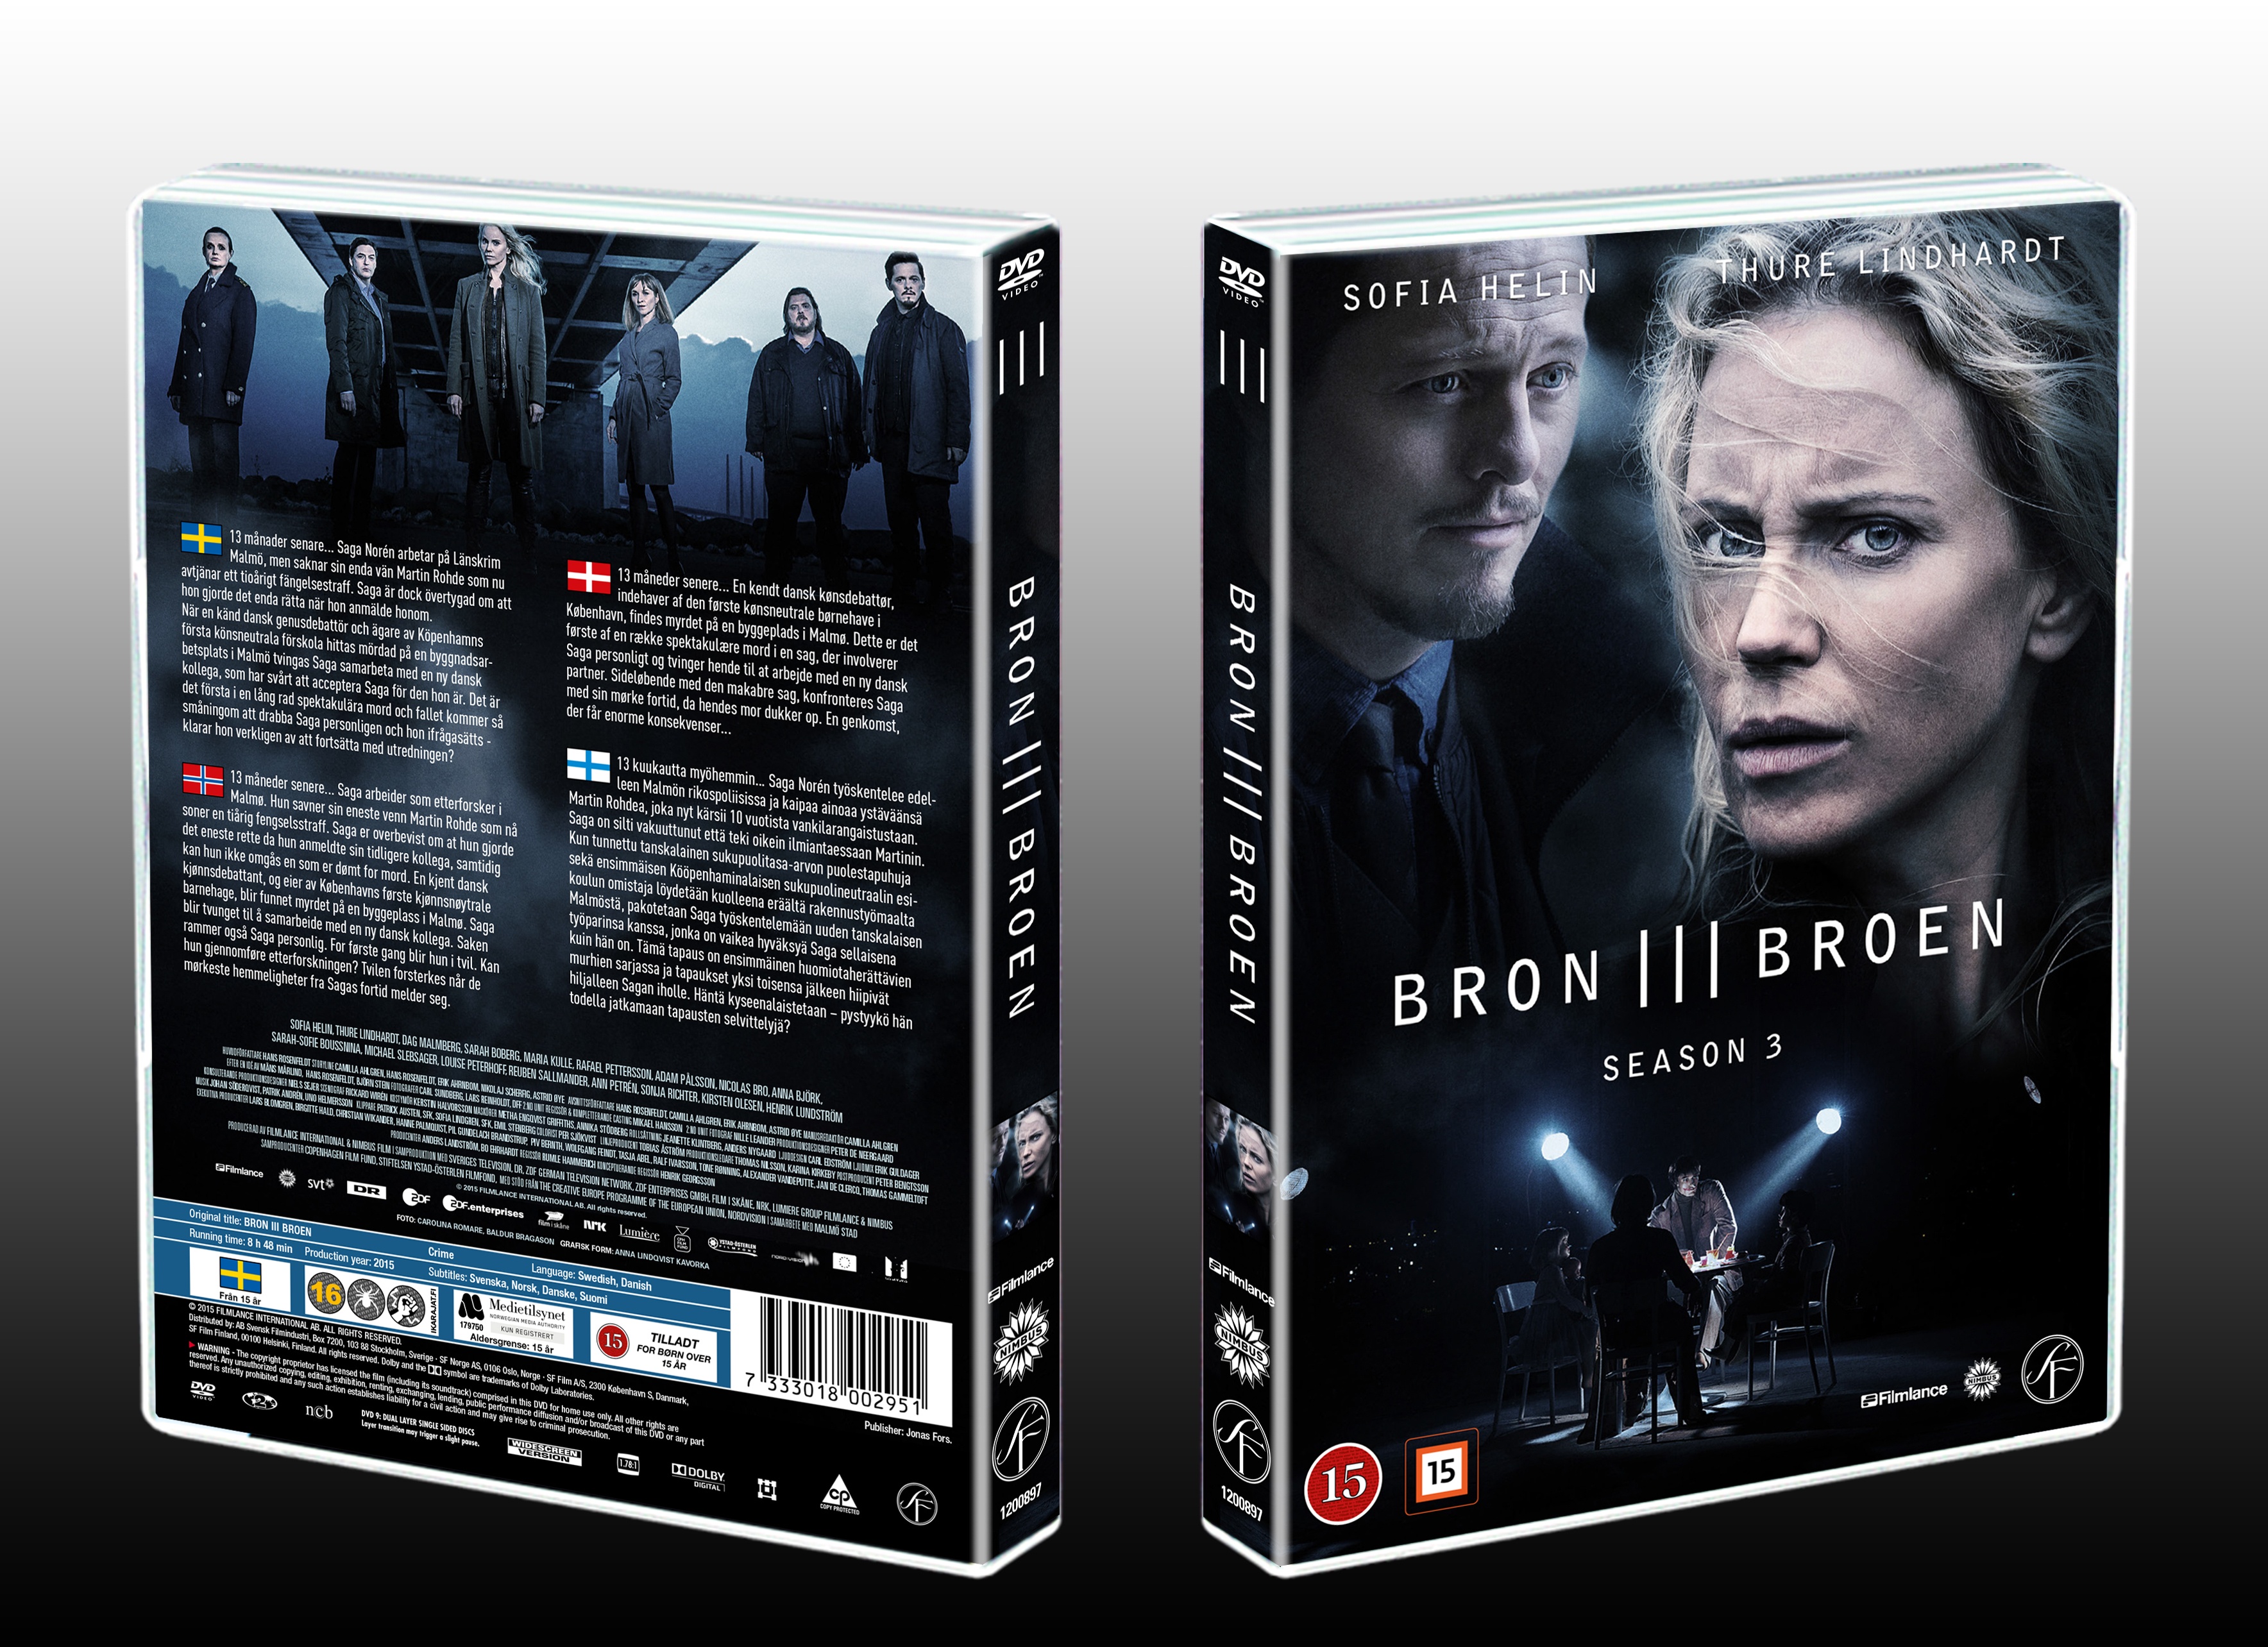 Bron - Broen - Season 3 box cover